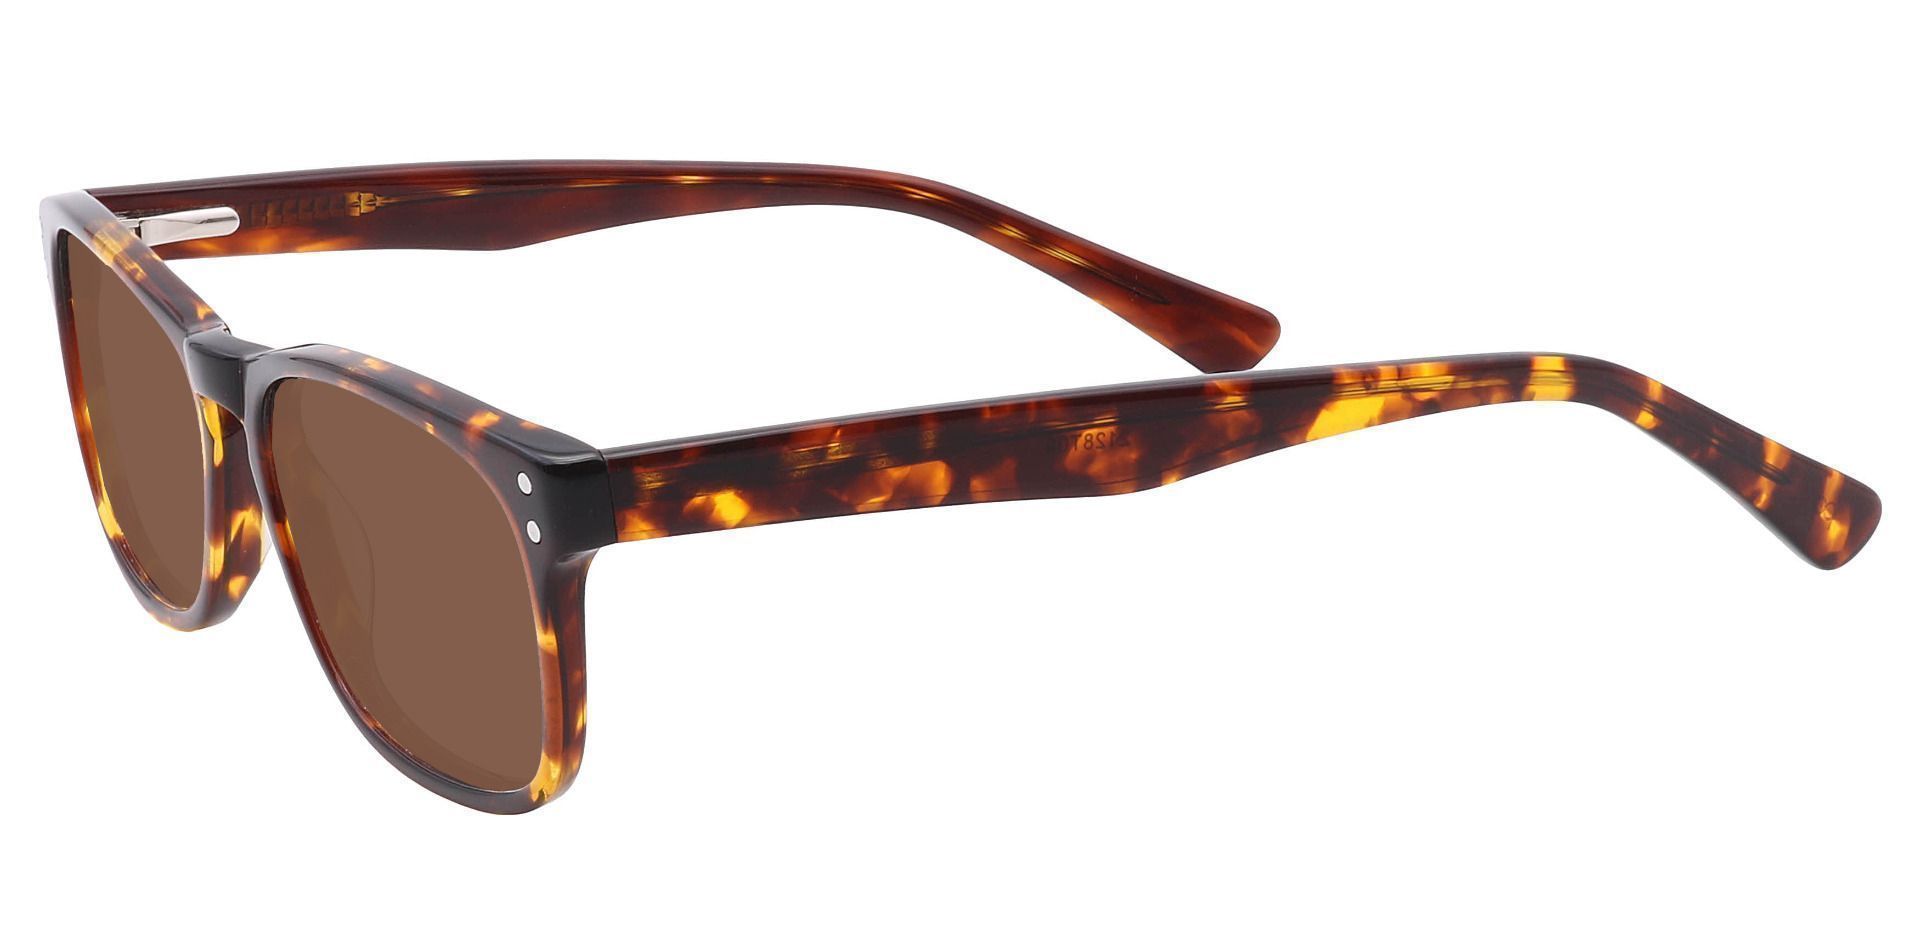 Morris Rectangle Prescription Sunglasses - Tortoise Frame With Brown Lenses